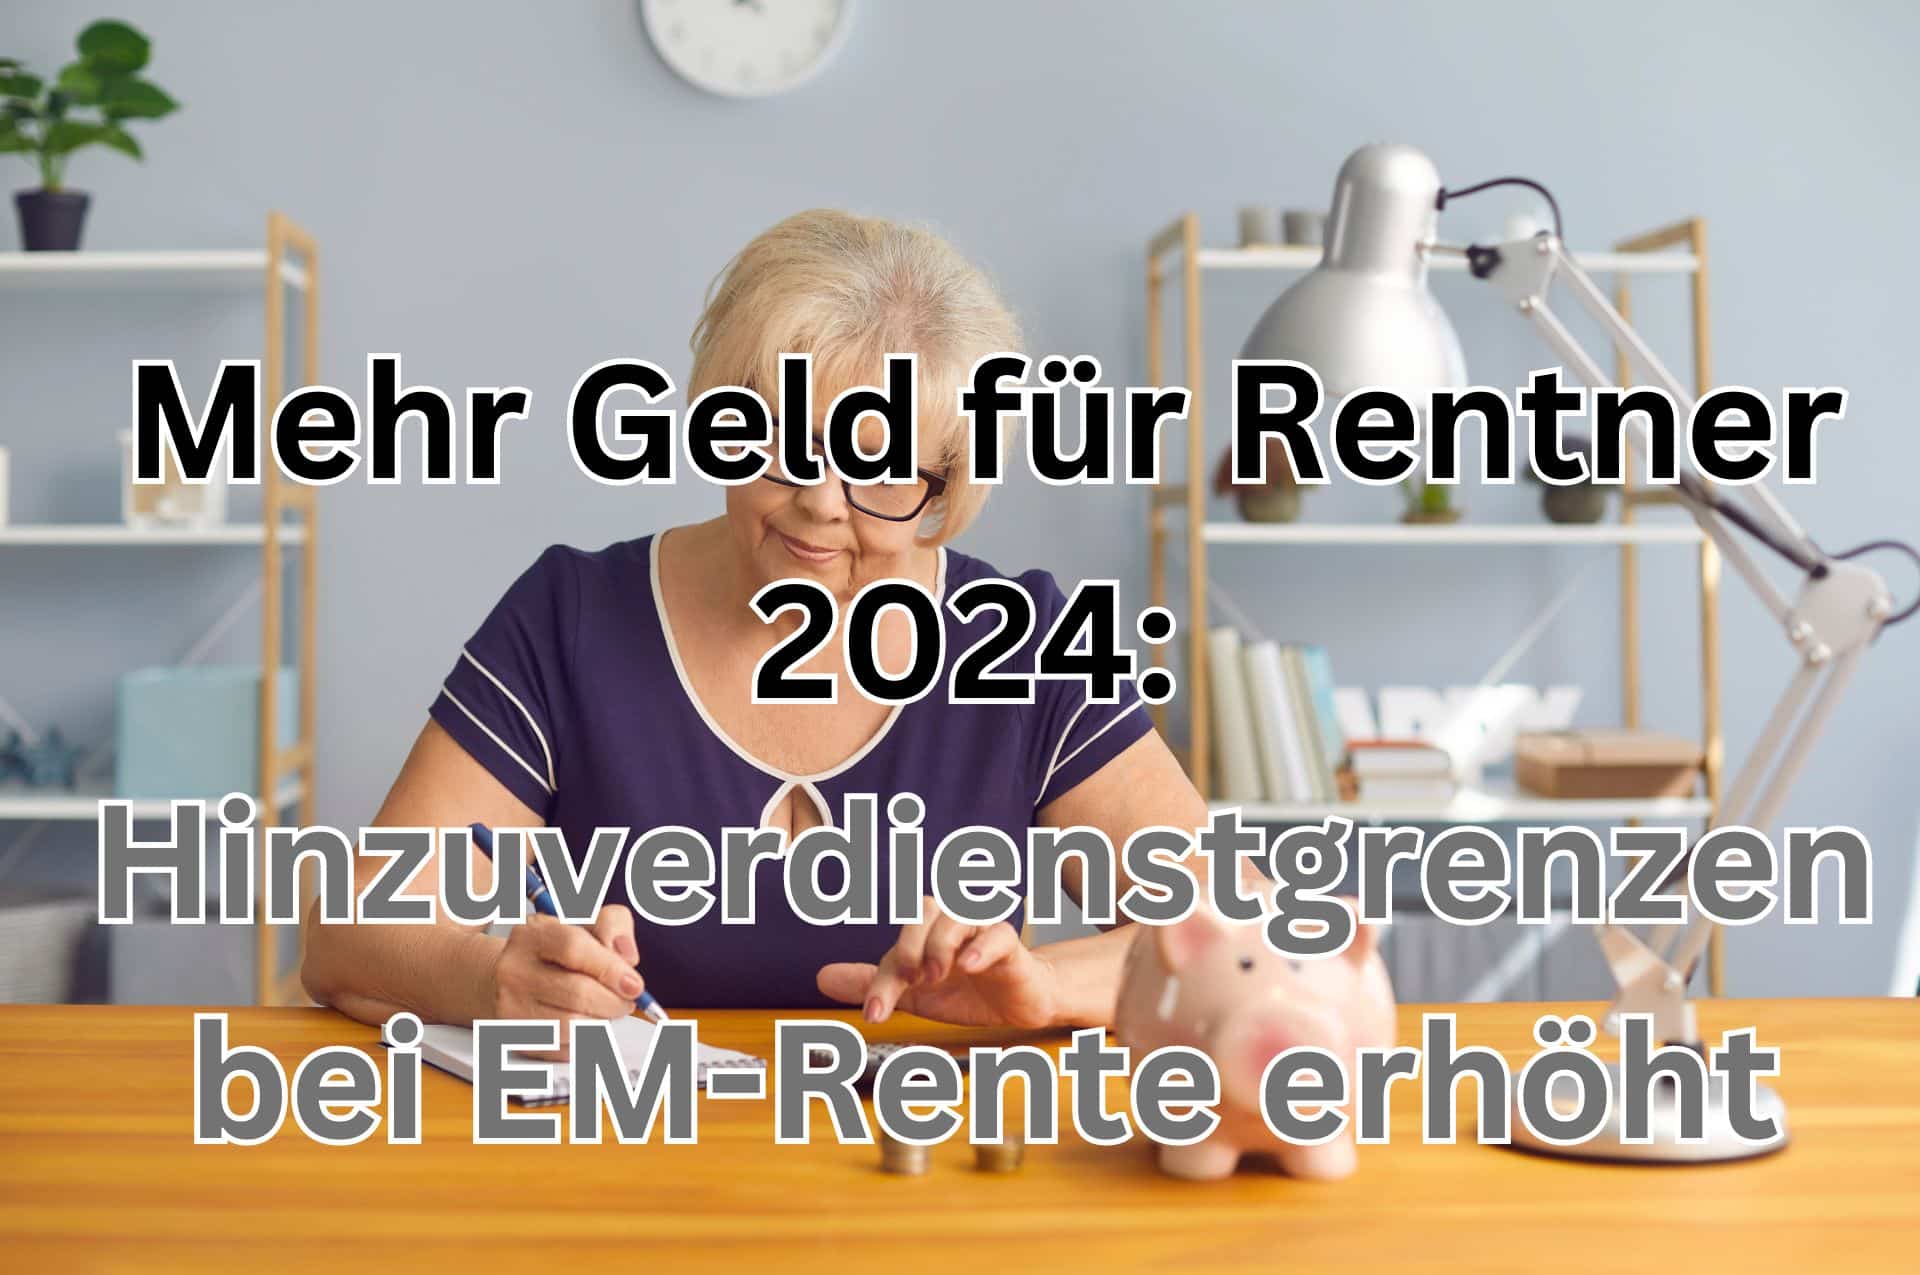 Mehr Geld für EM-Rentner 2024: Hinzuverdienstgrenzen erhöht bei voller und teilweiser Erwerbsminderungsrente.